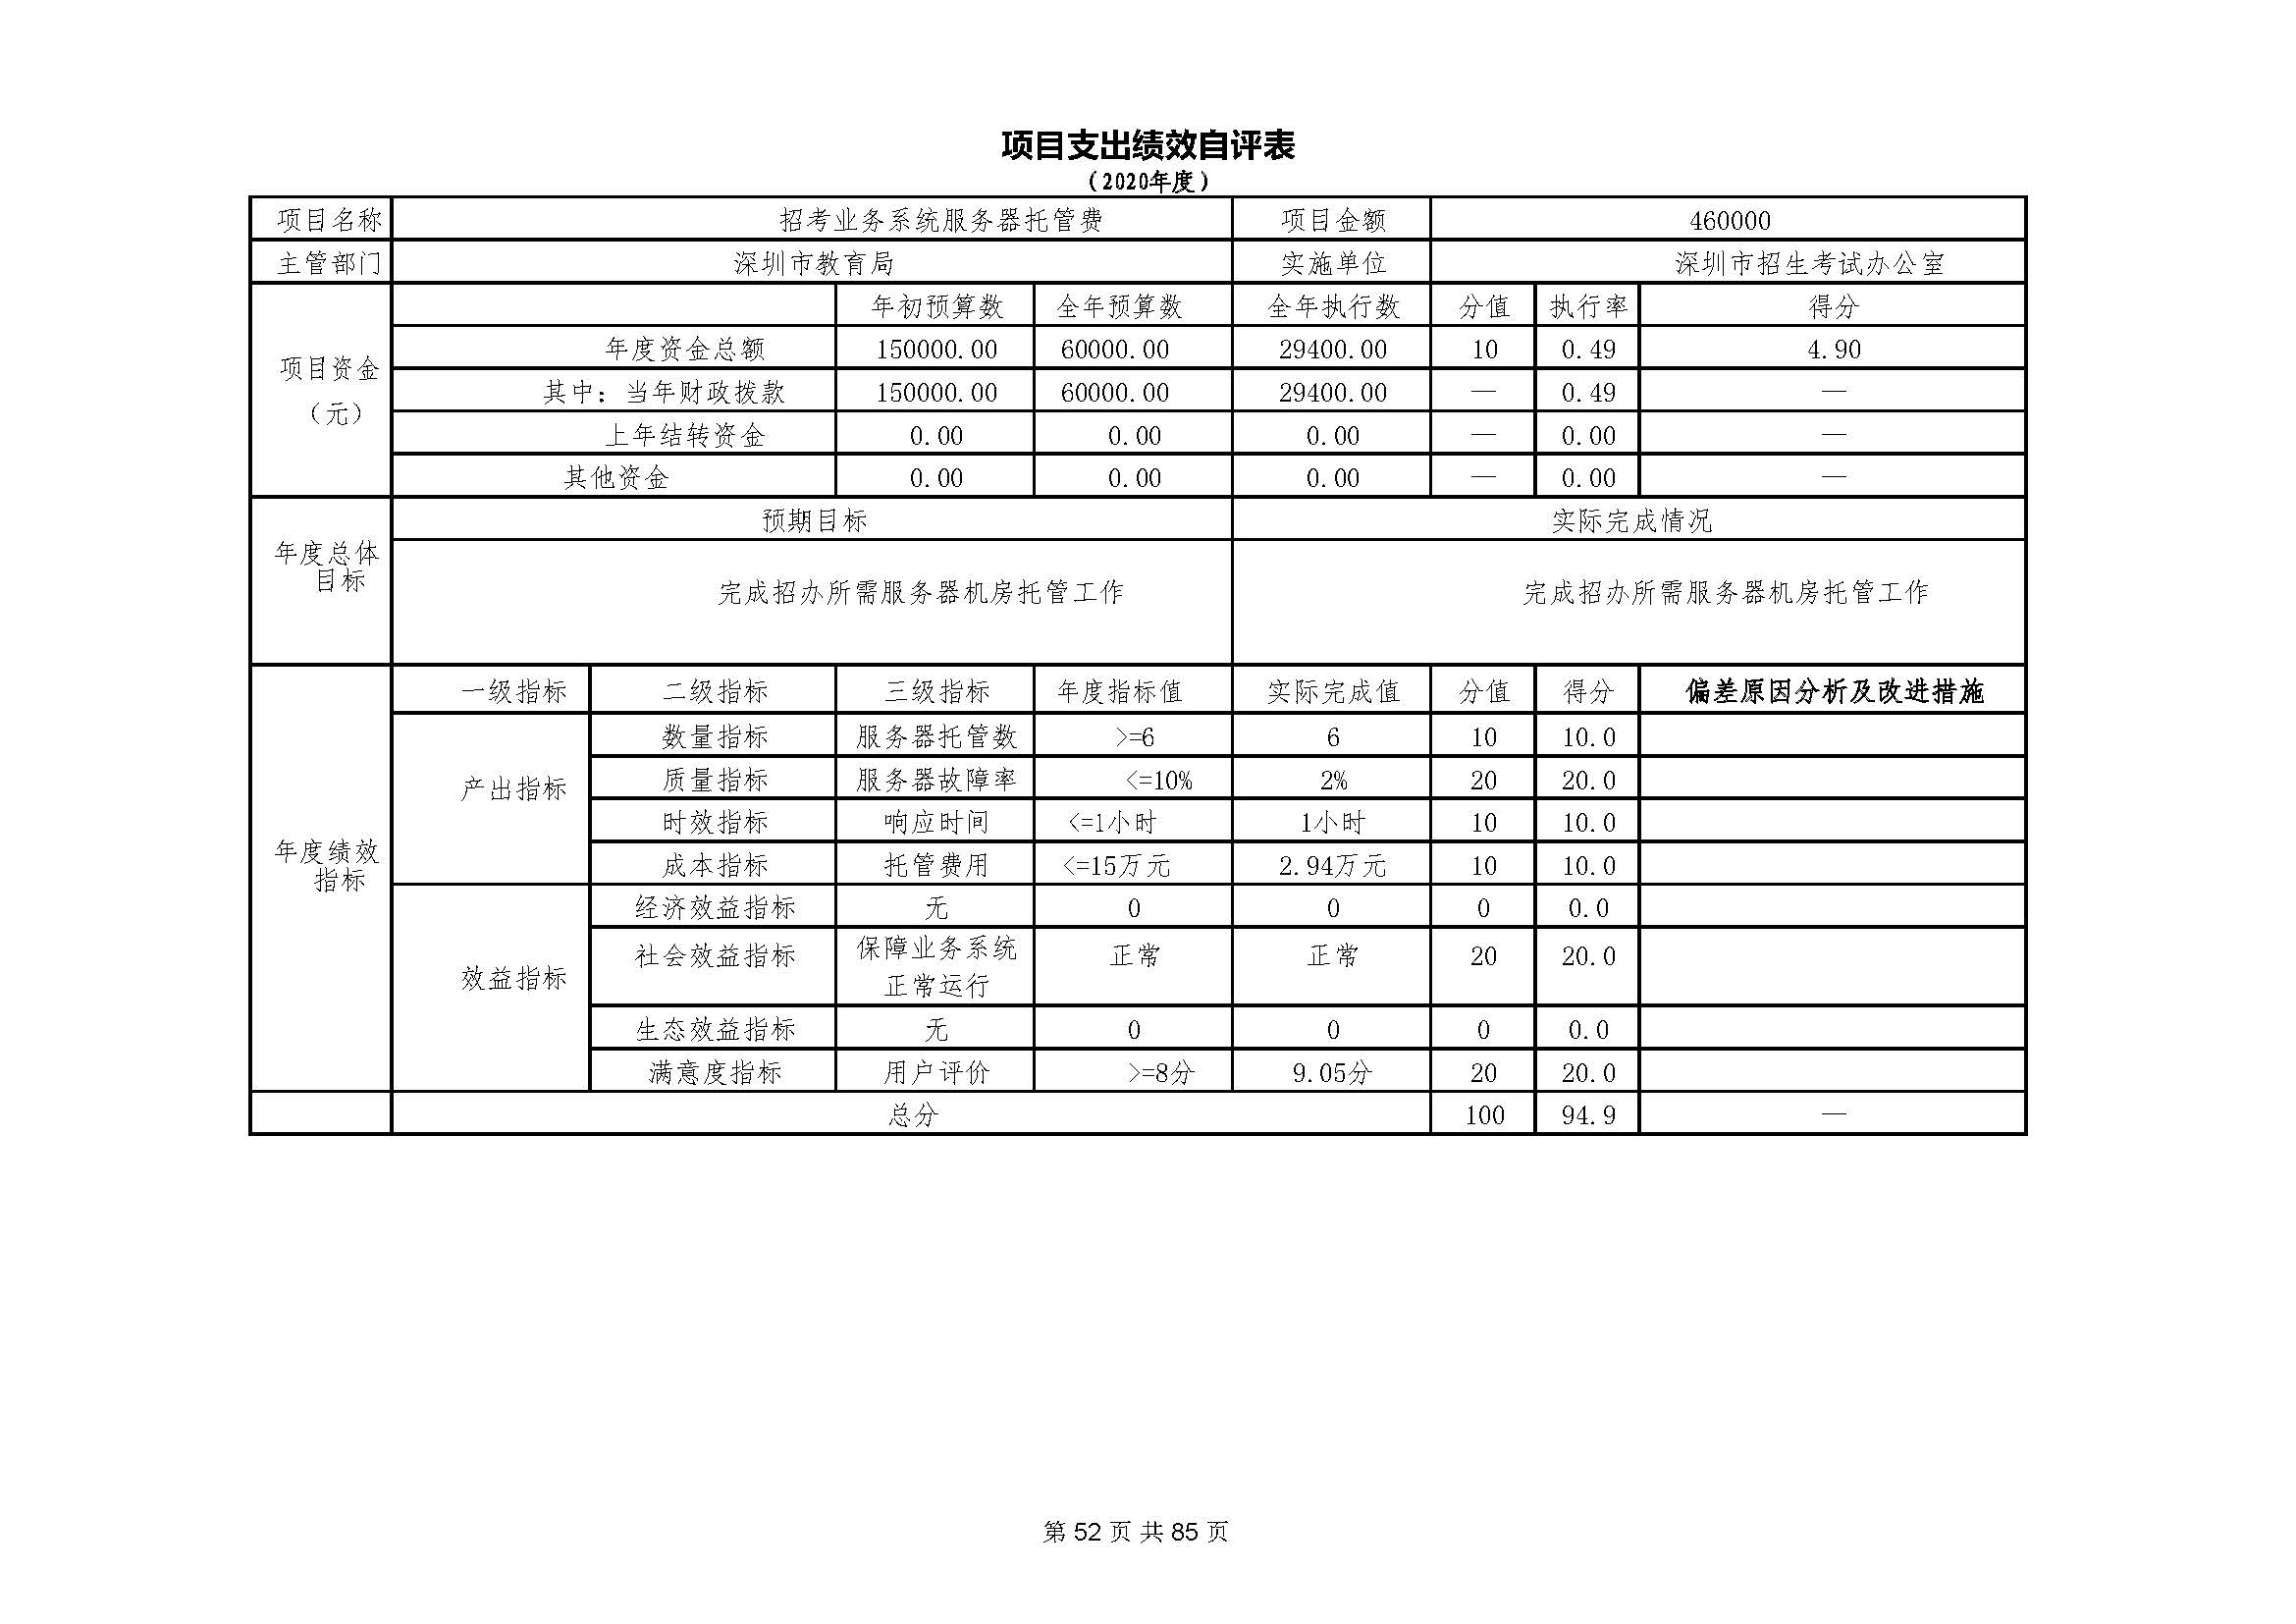 深圳市招生考试办公室2020年度部门决算_页面_53.jpg